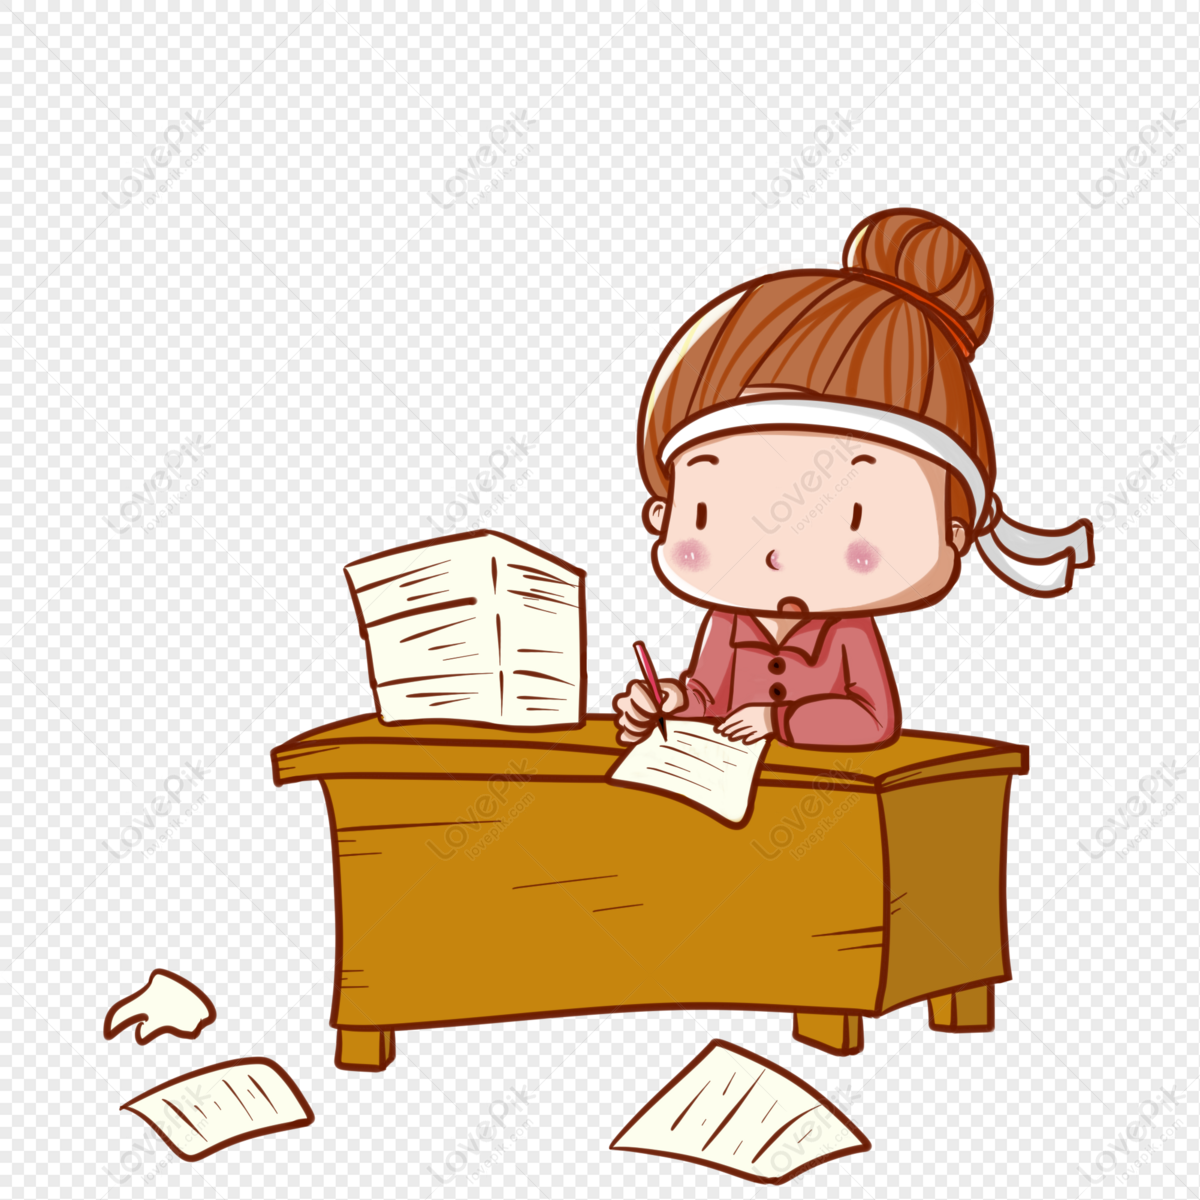 Girl doing homework during the school quarter, quarter back, and homework, desk png image free download